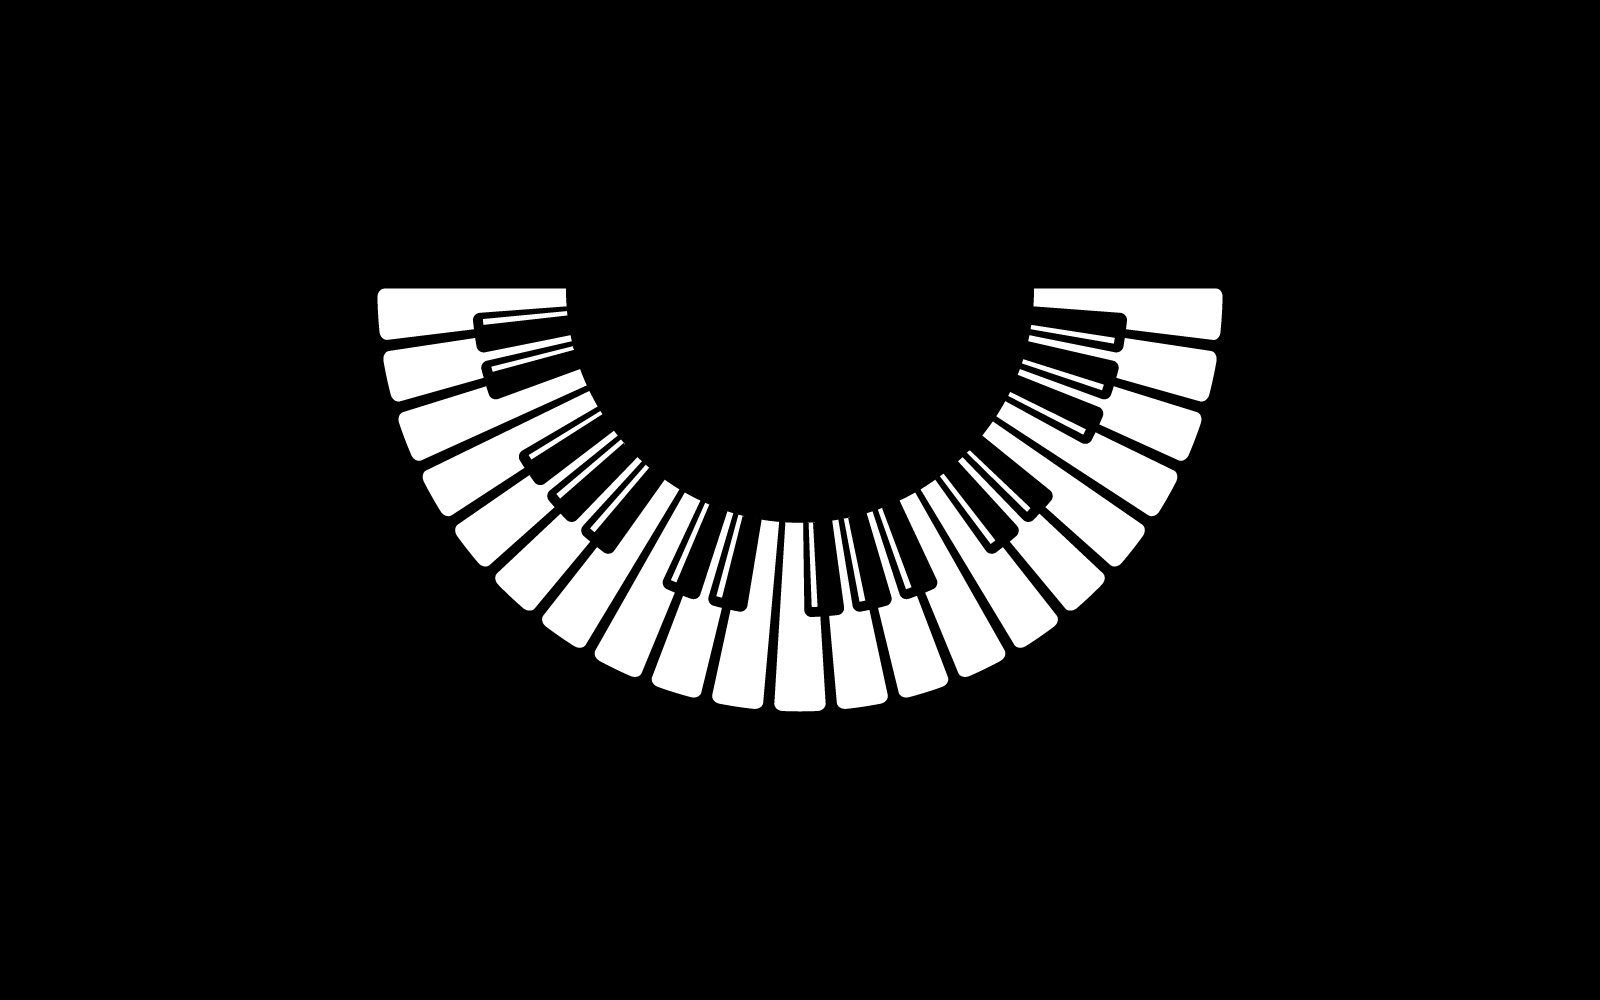 Фортепиано на черном фоне векторные иллюстрации плоский дизайн шаблона